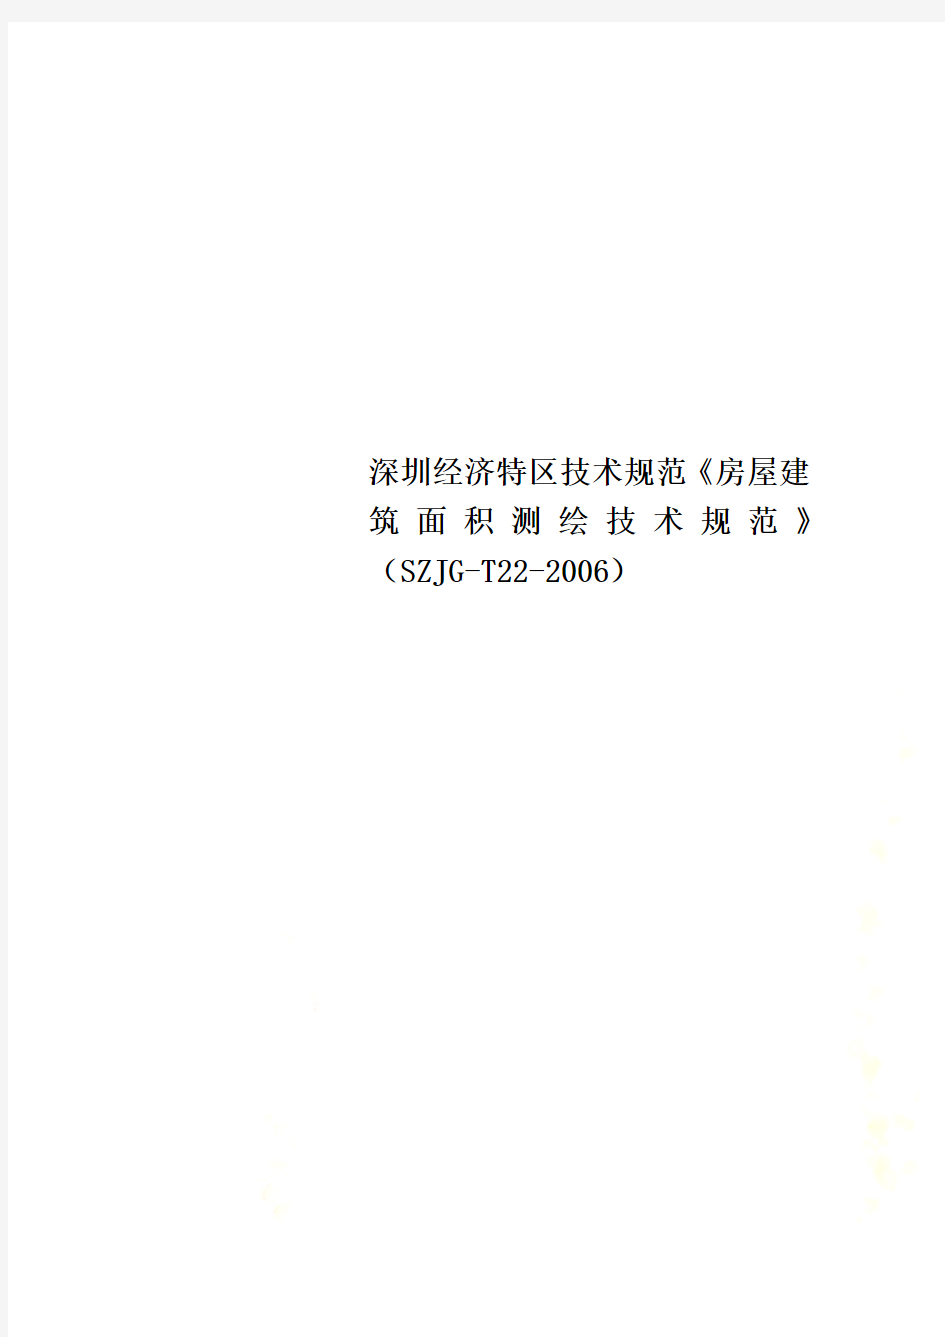 深圳经济特区技术规范《房屋建筑面积测绘技术规范》(SZJG-T22-2006)